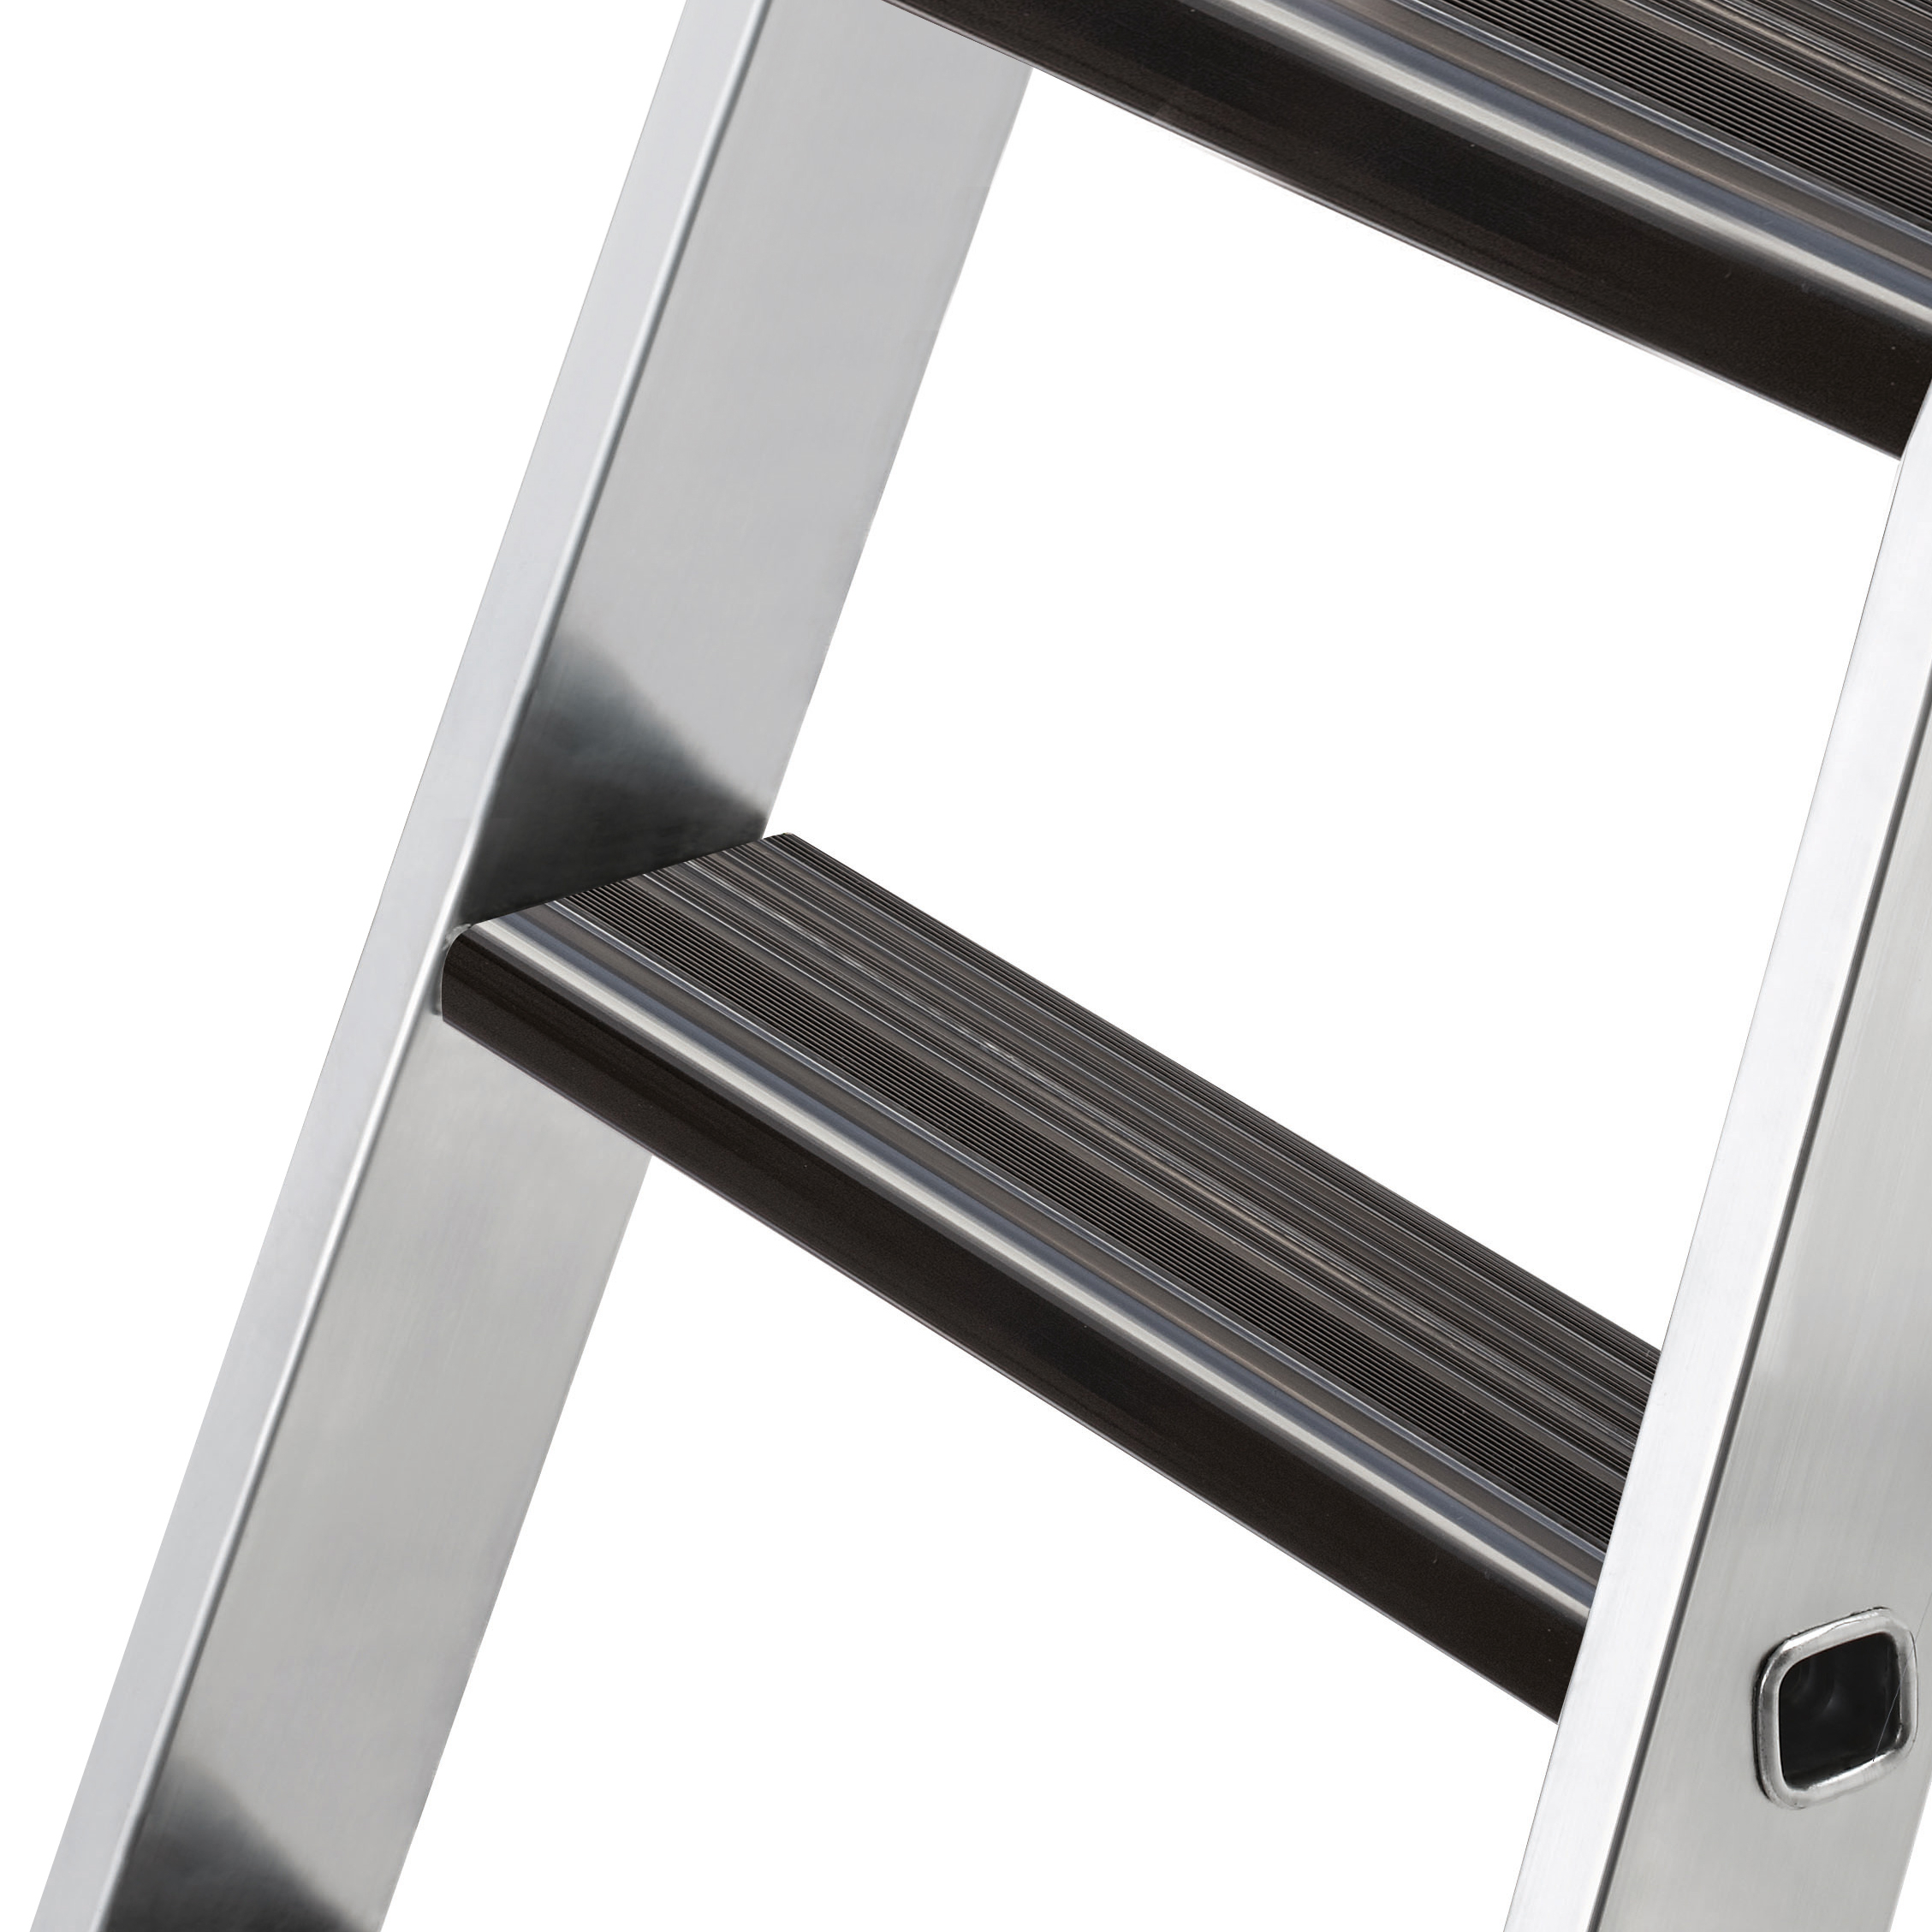 Nachrüstsatz Trittauflage clip-step relax für Stufen-Anlegeleiter, Meterware, 1400 mm